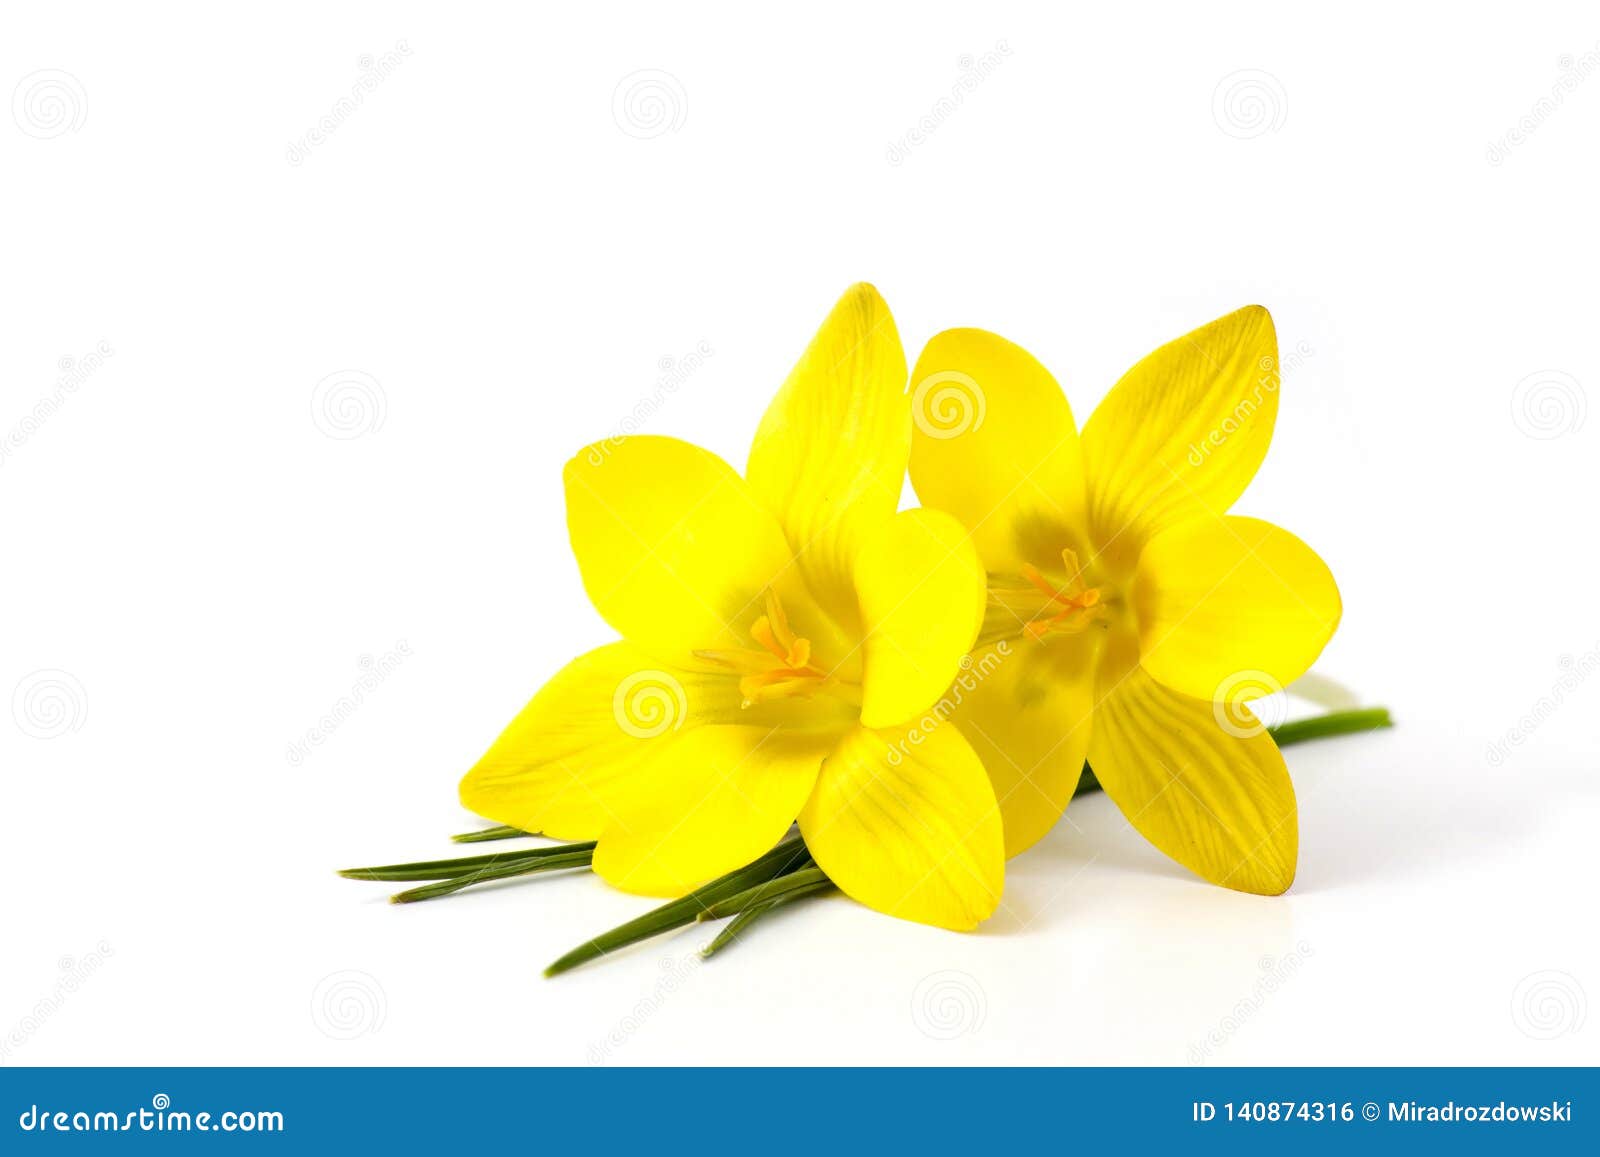 Krokus - eine der ersten Frühlingsblumen. Krokus - einer des ersten Frühlinges blüht - weißer Hintergrund